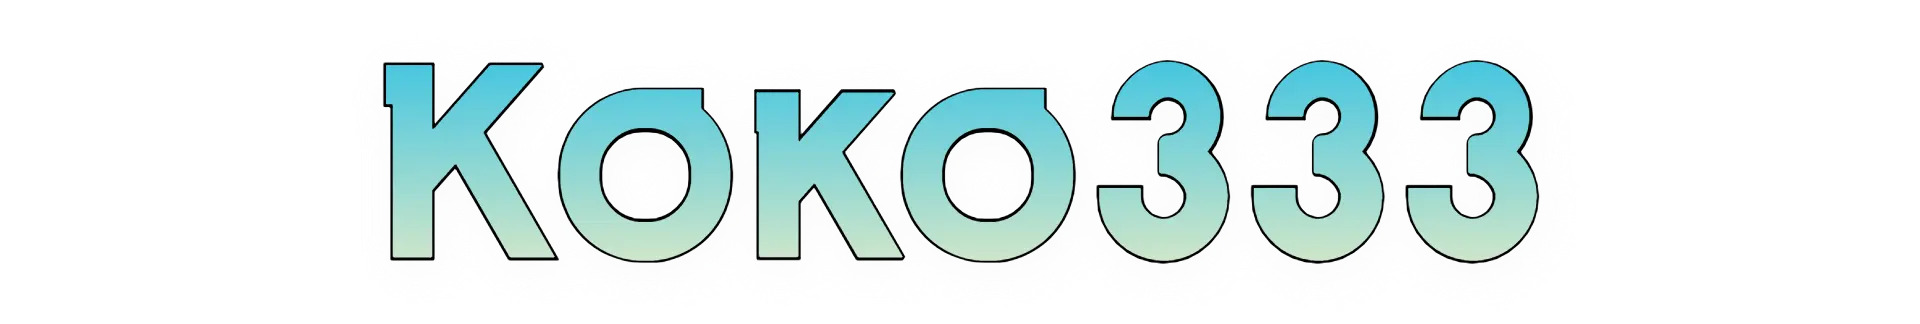 Koko333